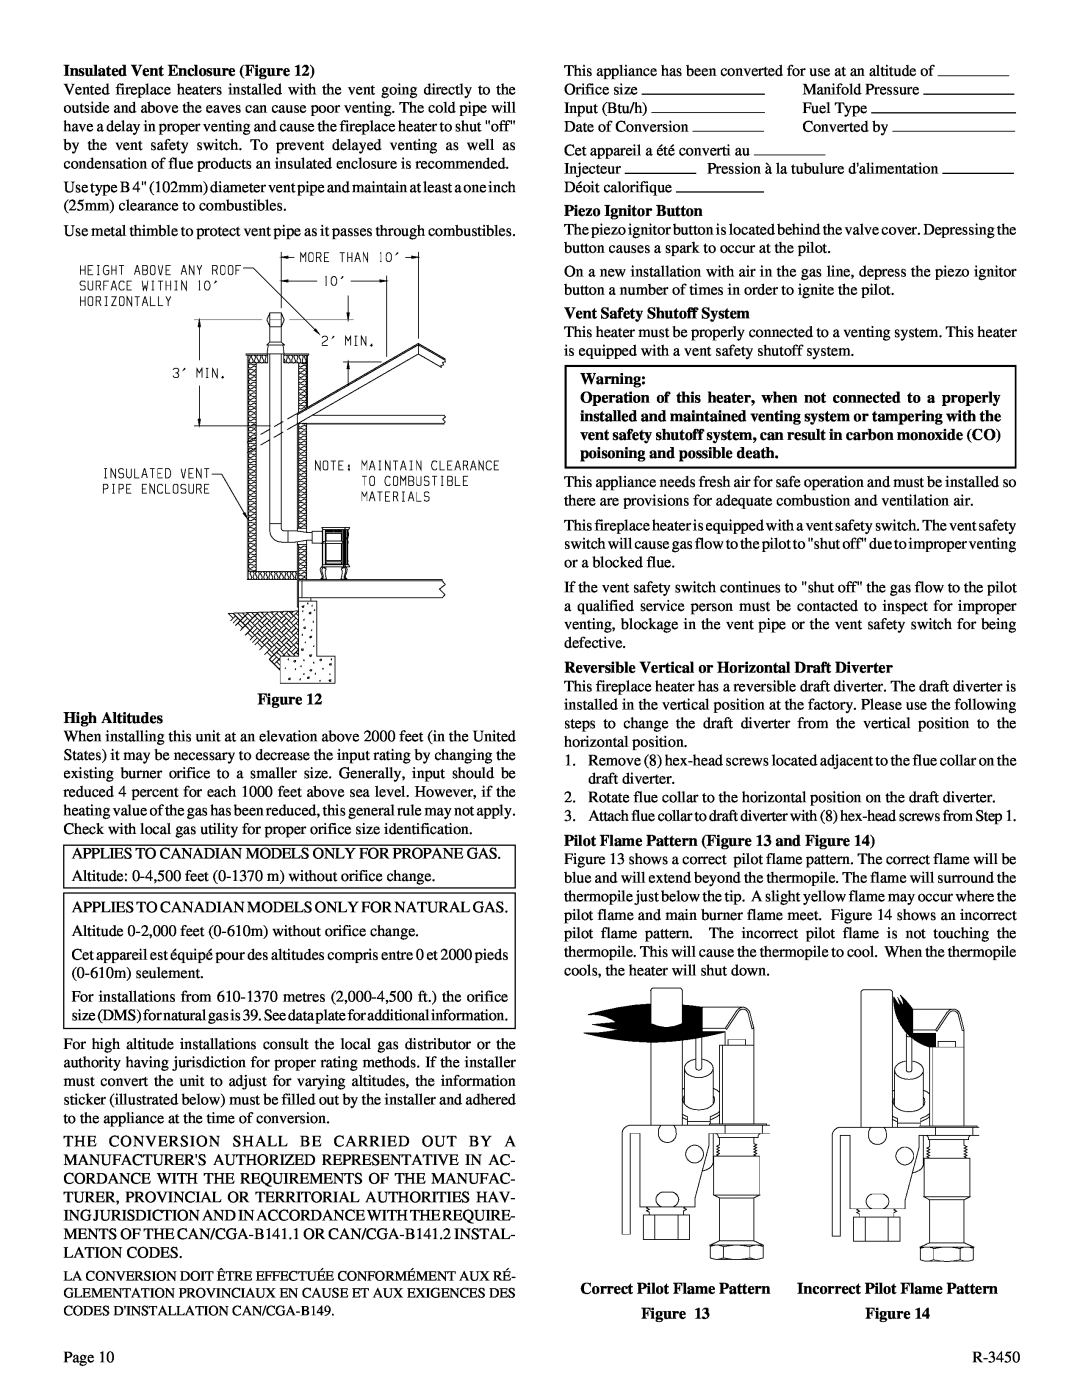 Empire Comfort Systems CIBV-30-2 Insulated Vent Enclosure Figure, Figure High Altitudes, Piezo Ignitor Button 